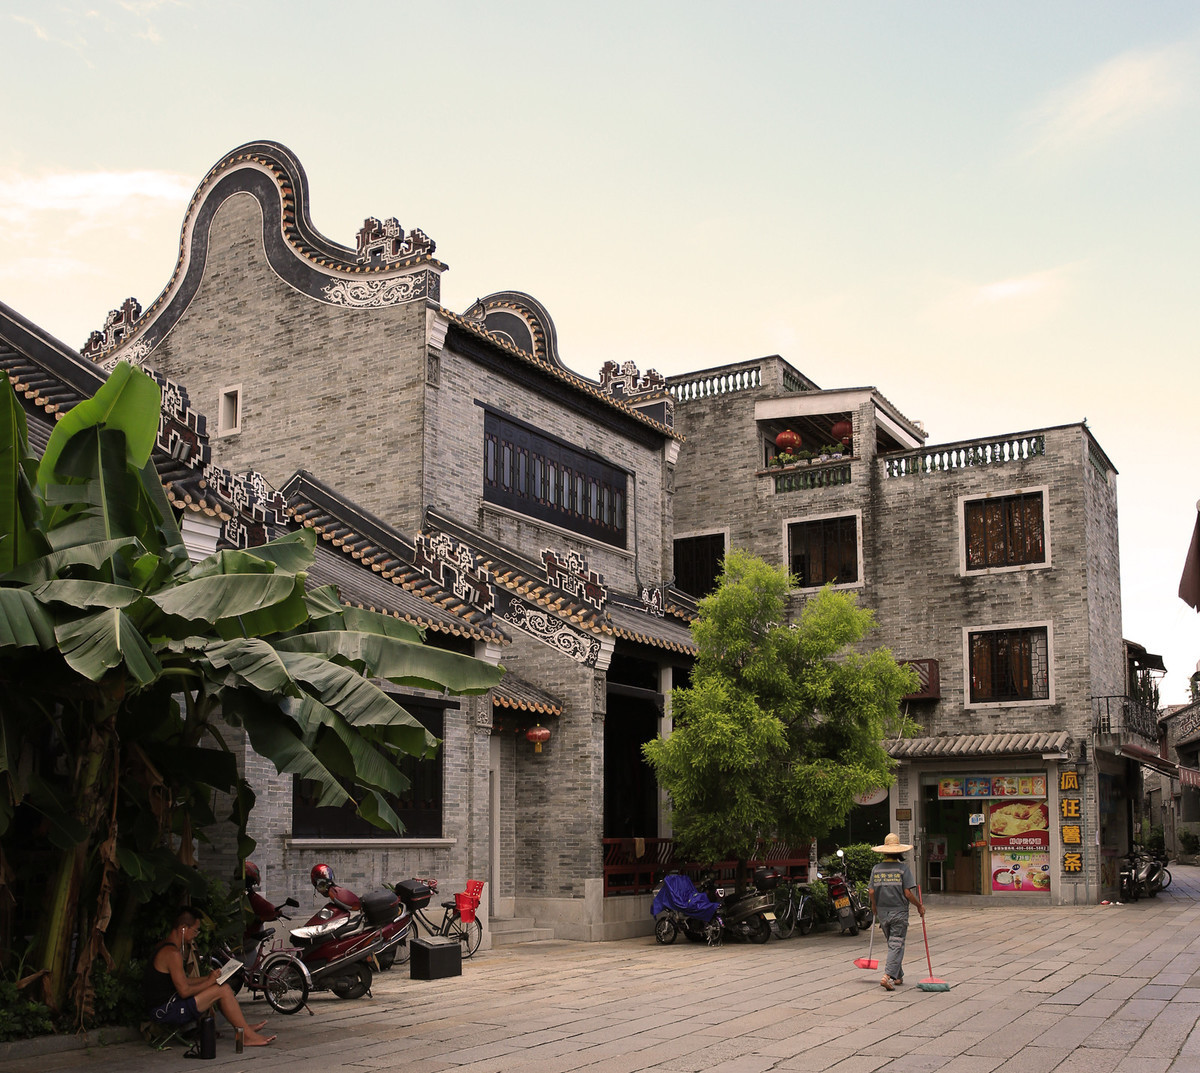 广州沙湾古镇有间用耗壳堆砌的老屋, 冬暖夏凉还能抵挡枪炮攻击